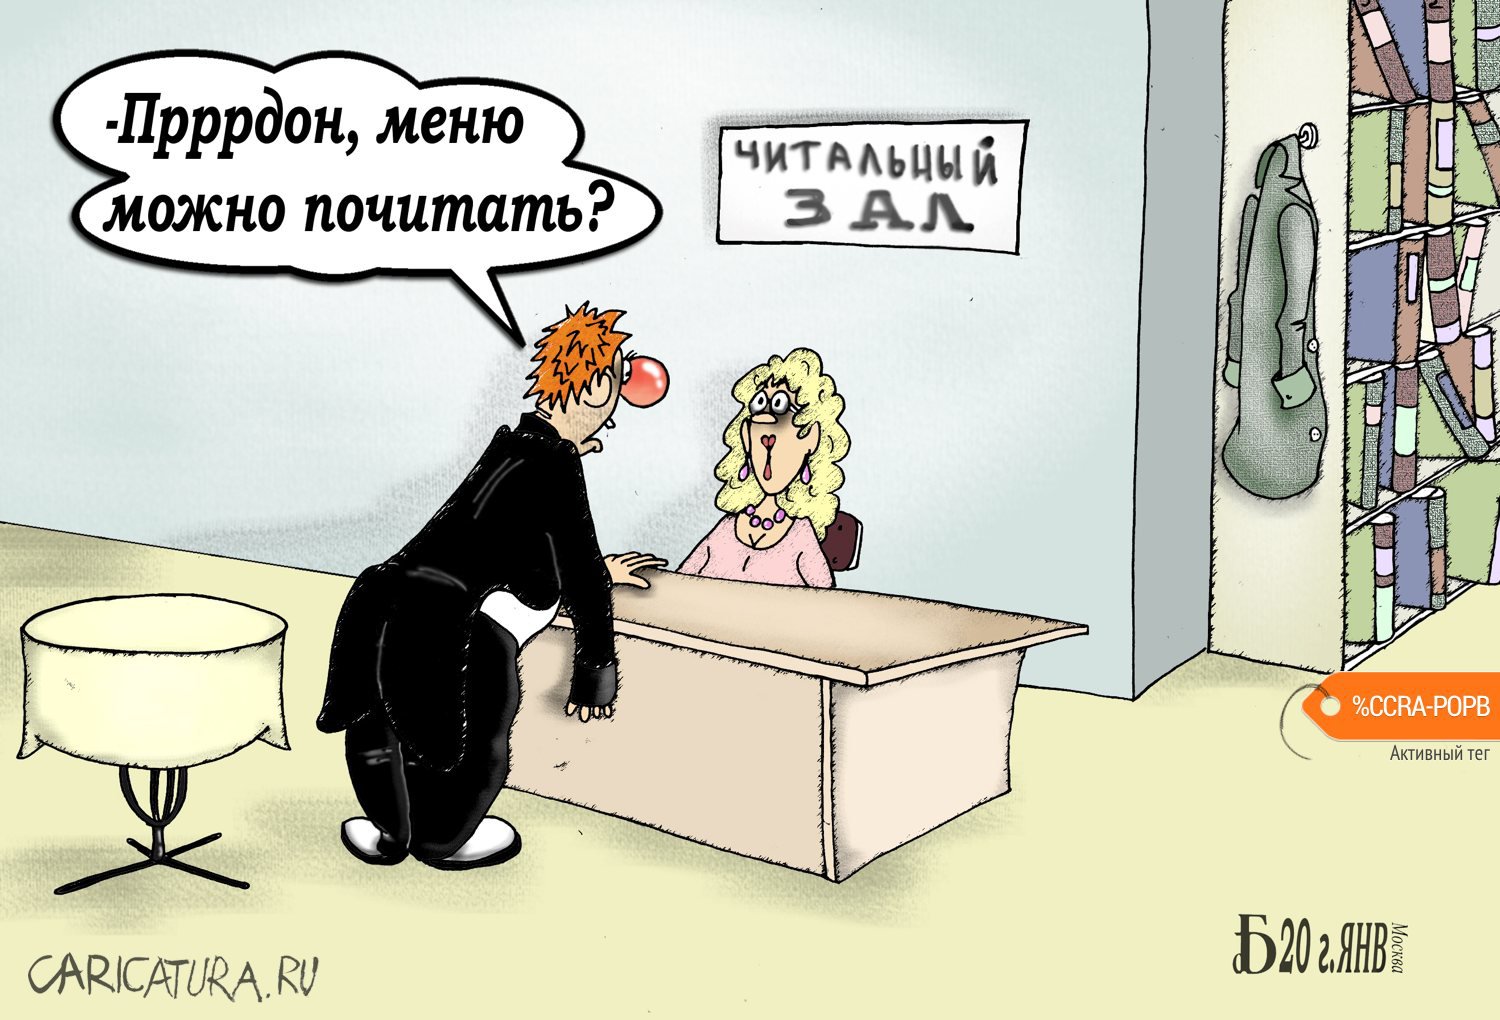 Карикатура "Про менючитальню", Борис Демин